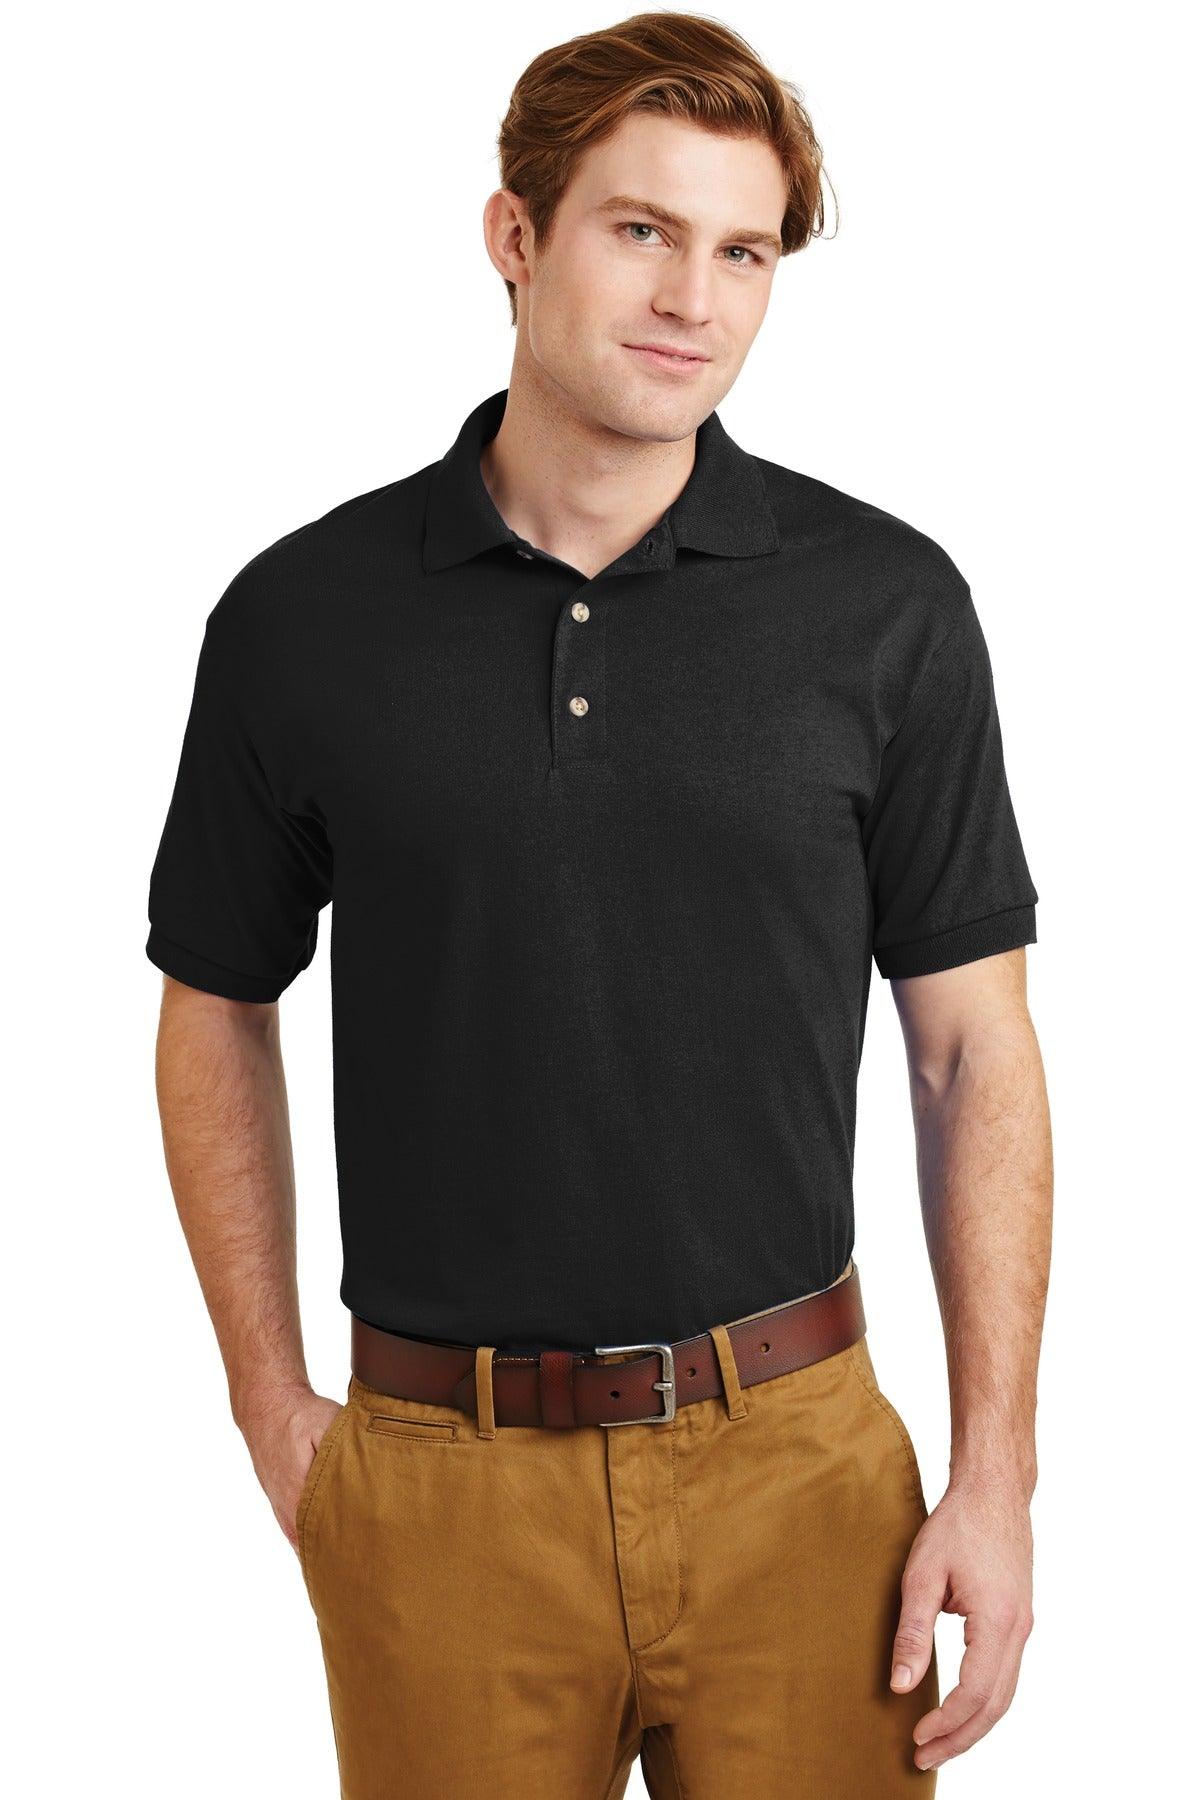 Gildan - DryBlend 6-Ounce Jersey Knit Sport Shirt. 8800 - Dresses Max